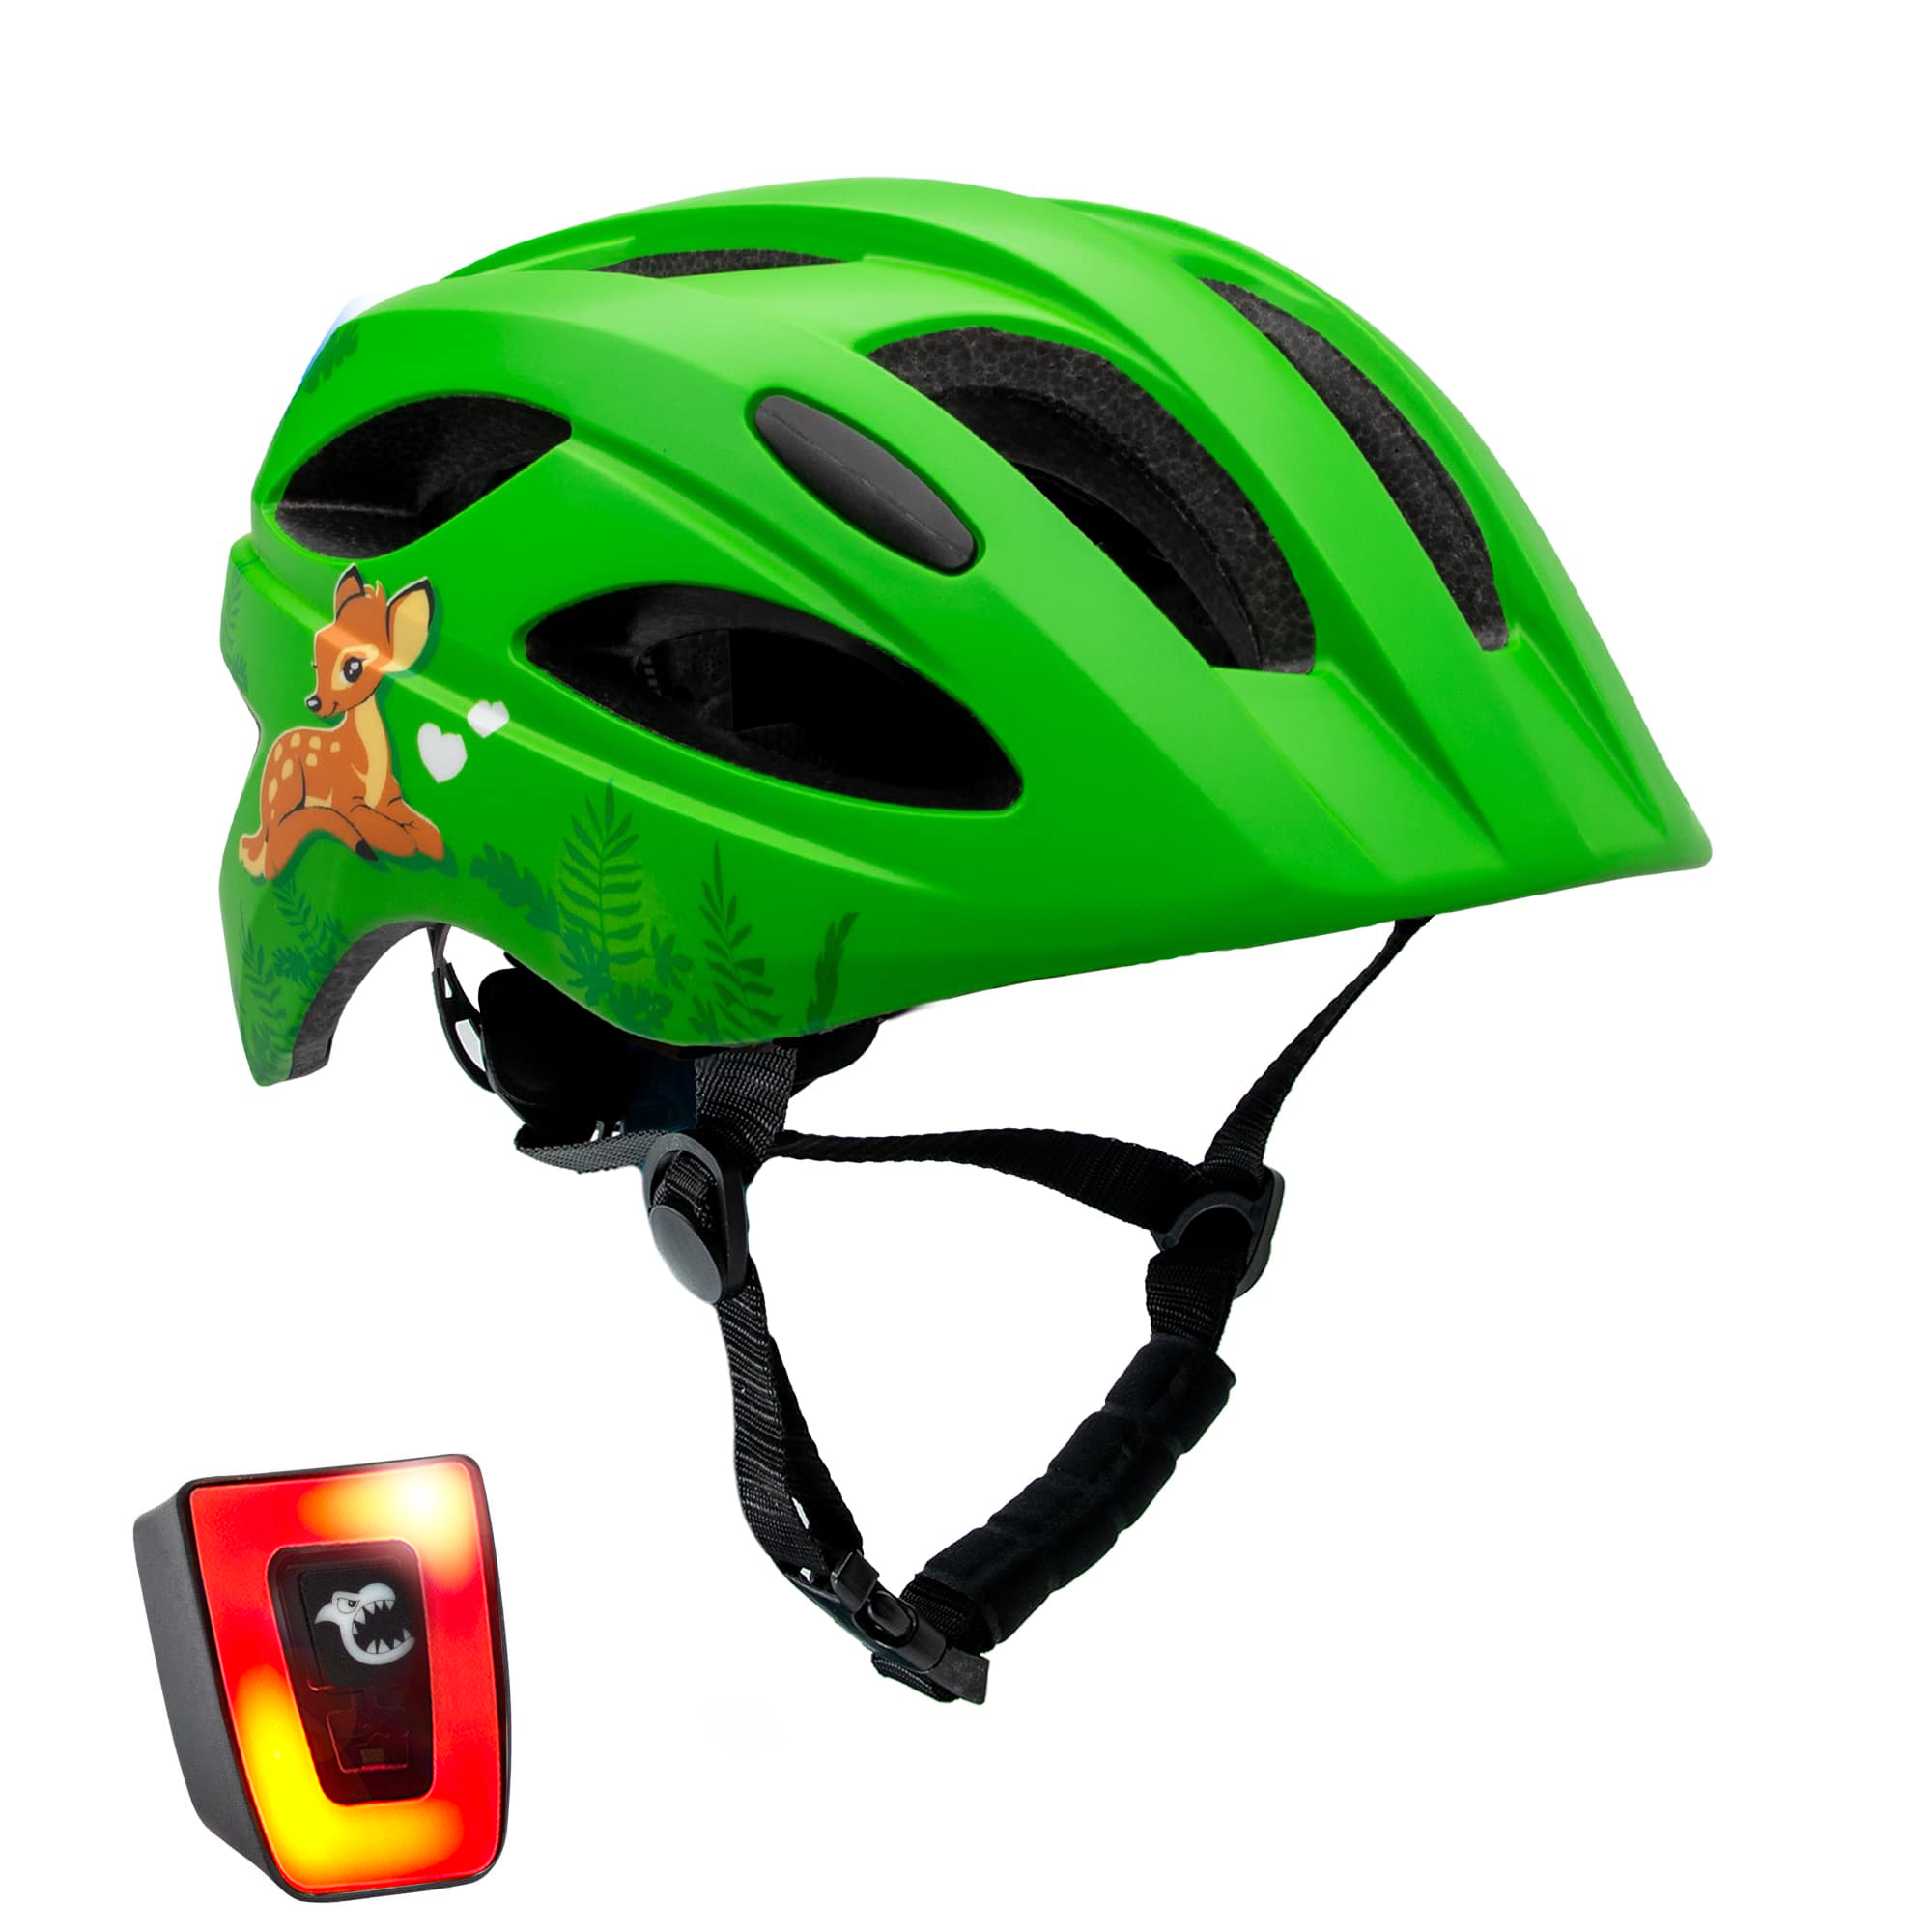 Billede af Grøn cykelhjelm til børn i alderen 6 - 12 år 54-58 cm med USB genopladeligt indbygget rødt LED lys. Sikkerhedstestet og EN 1078 certificeret